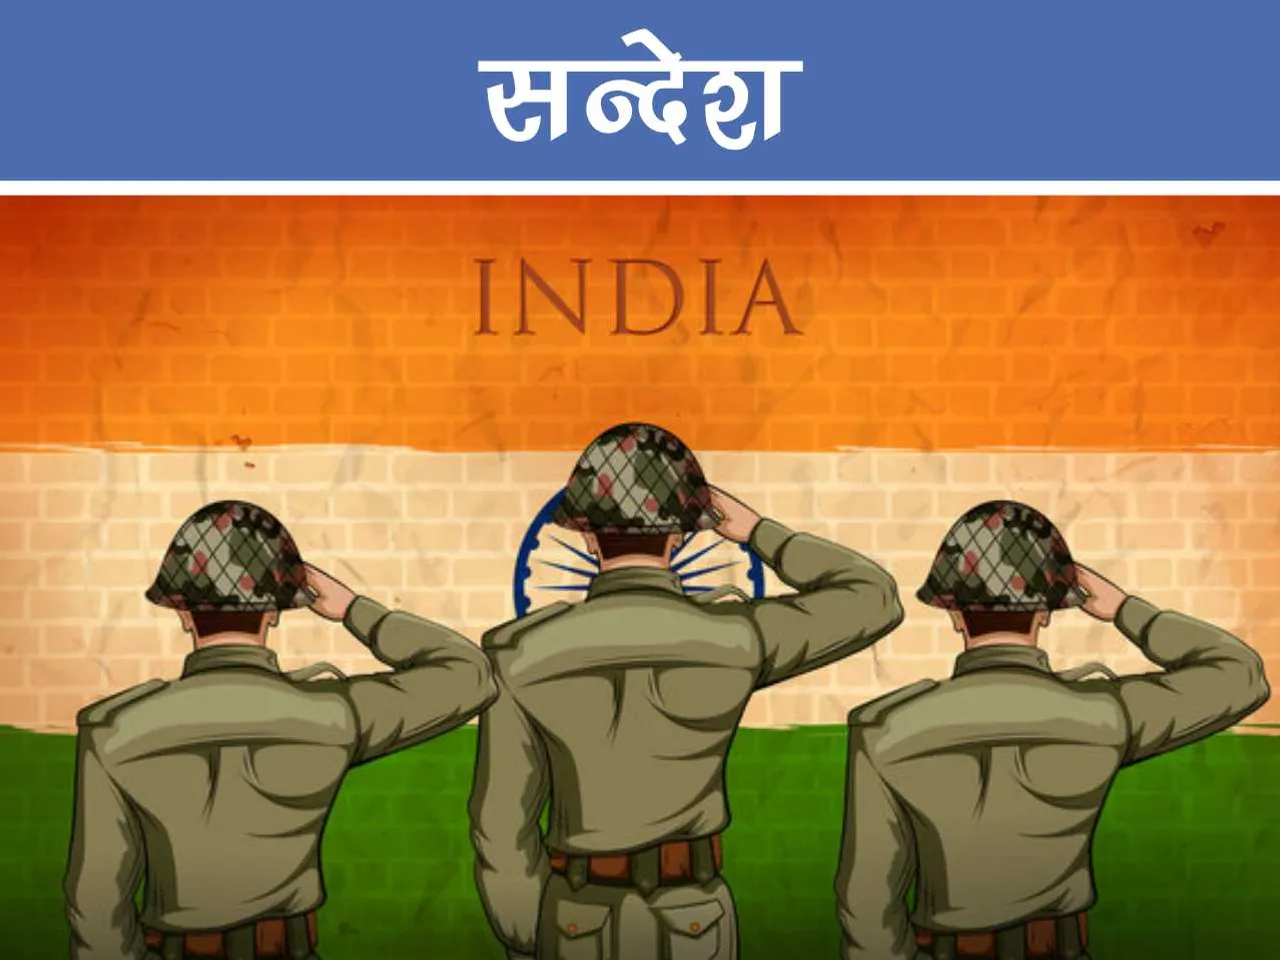 Indian army man saluting national flag cartoon image